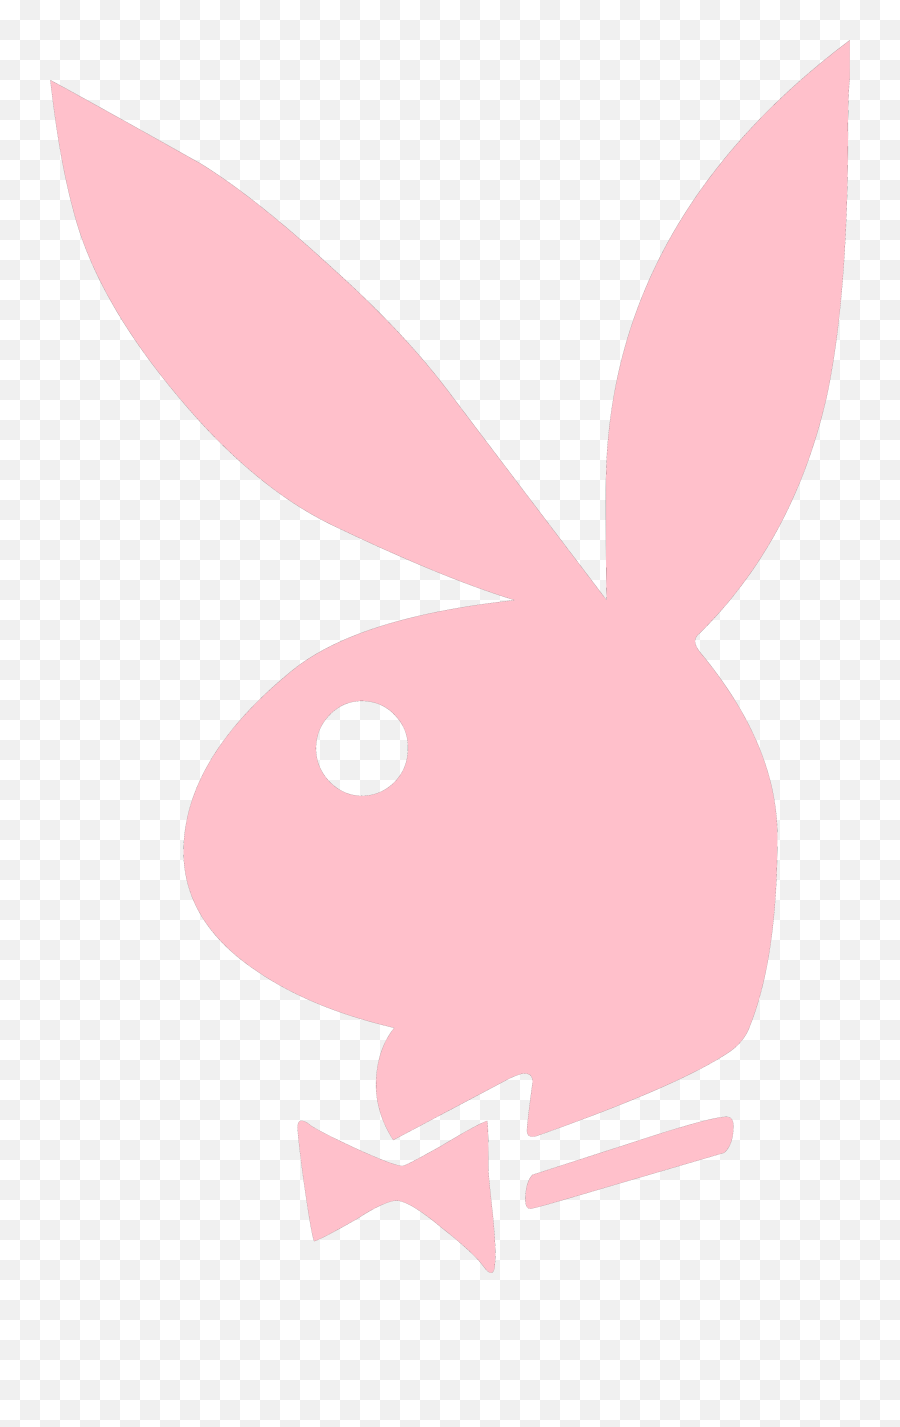 Playboy U2013 Logos Download - Play Boy Png,Bunny Transparent